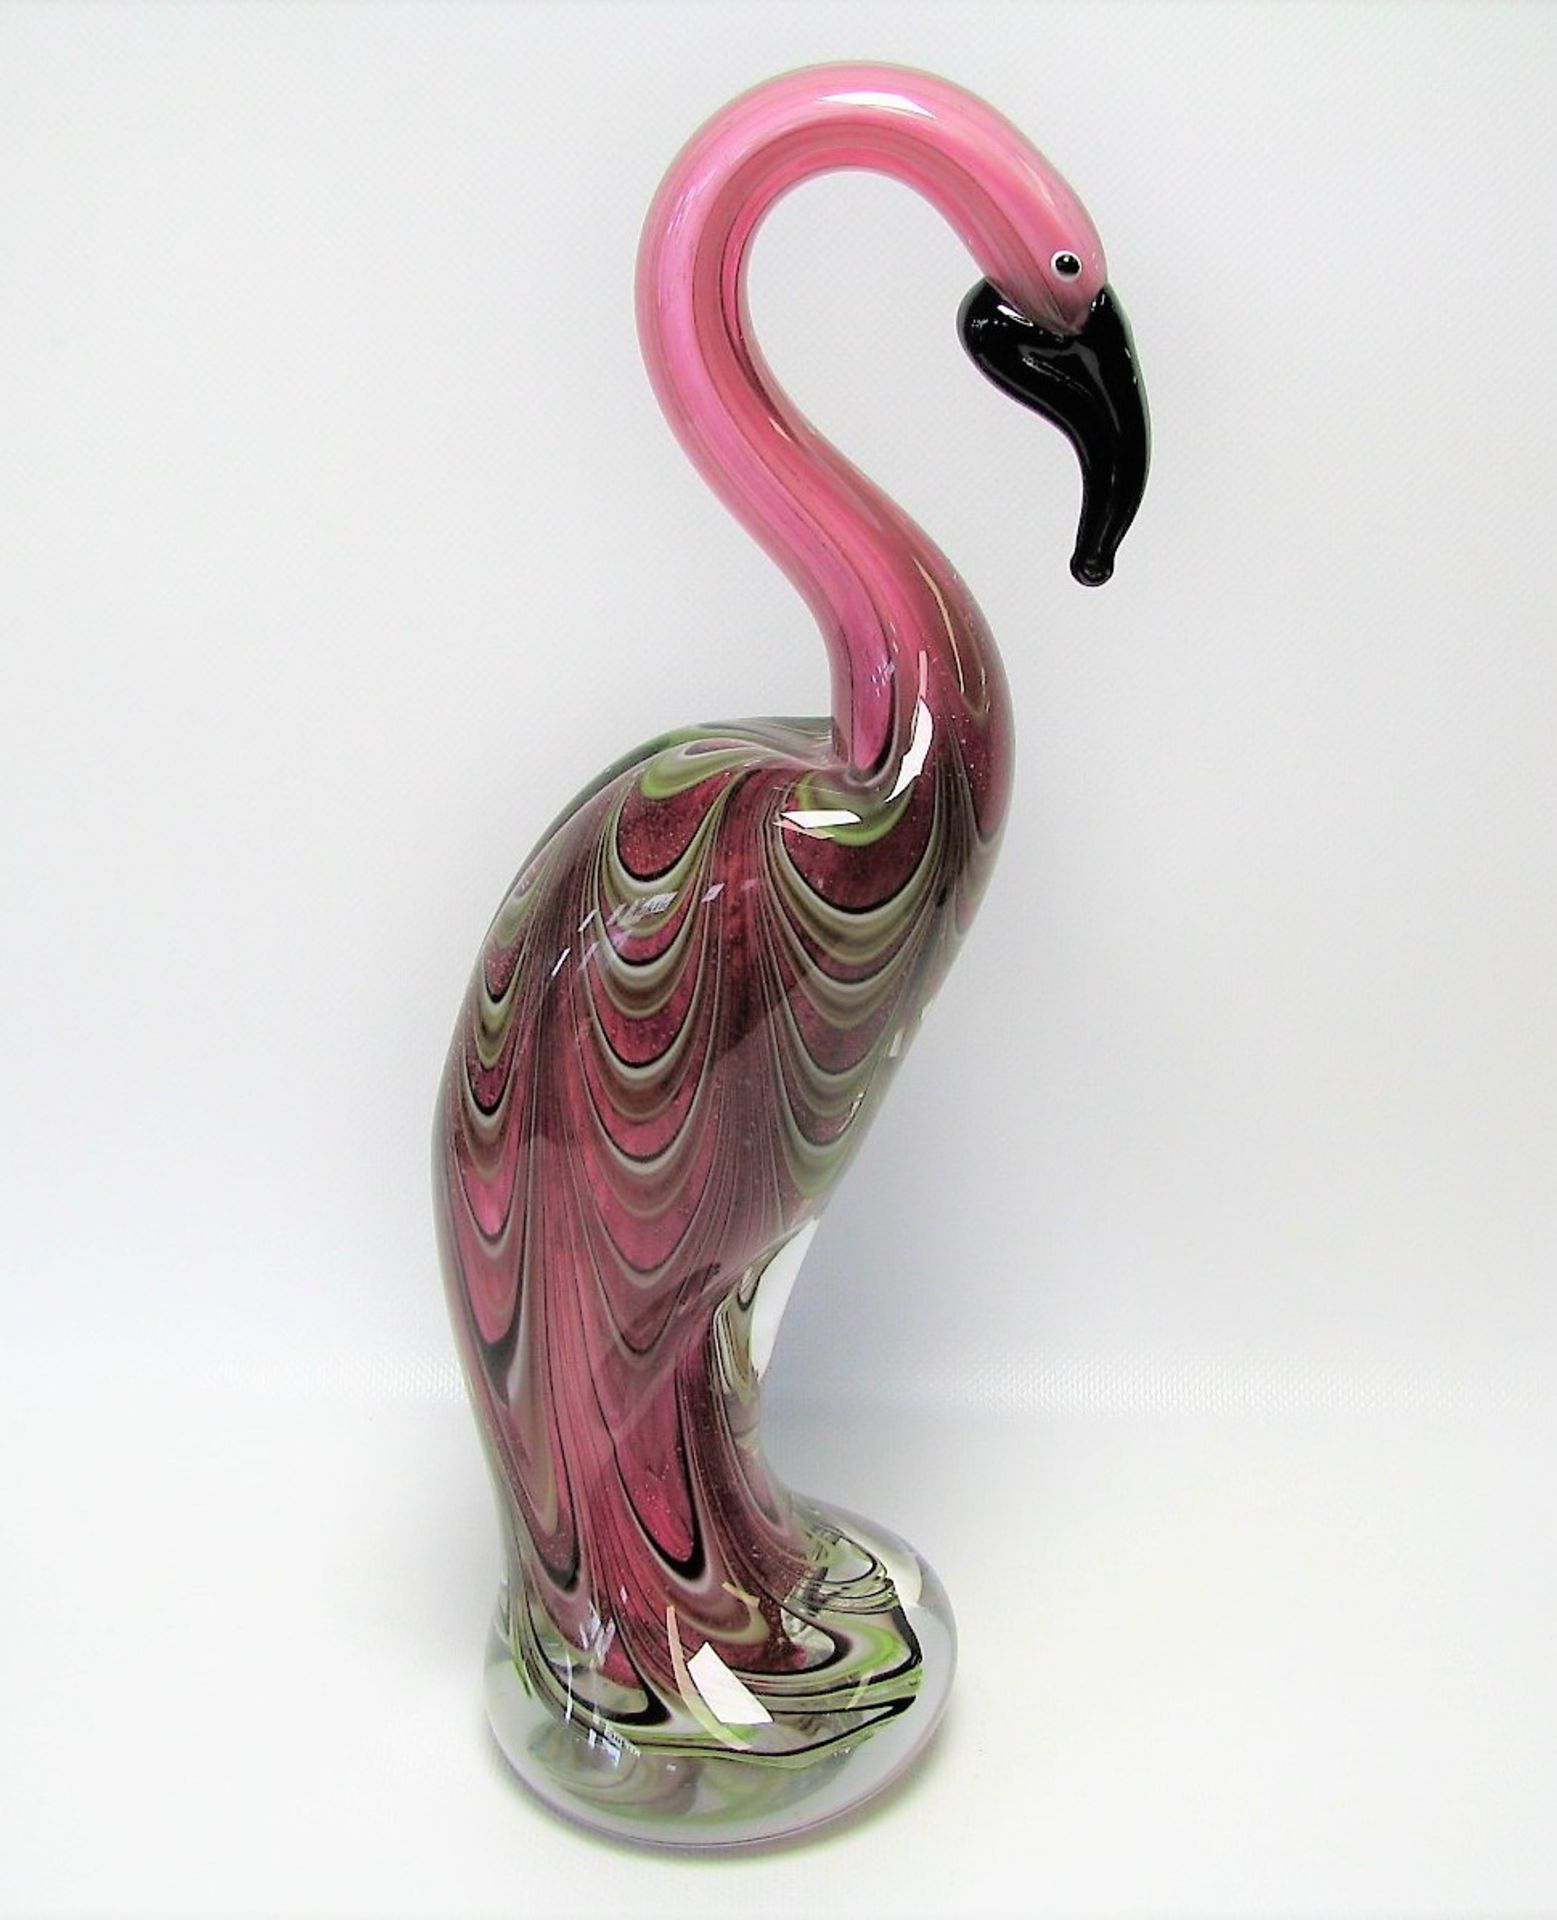 Stehender Flamingo, Murano, Glas mit farbigen Einschmelzungen, h 34 cm, d 15,5 cm.